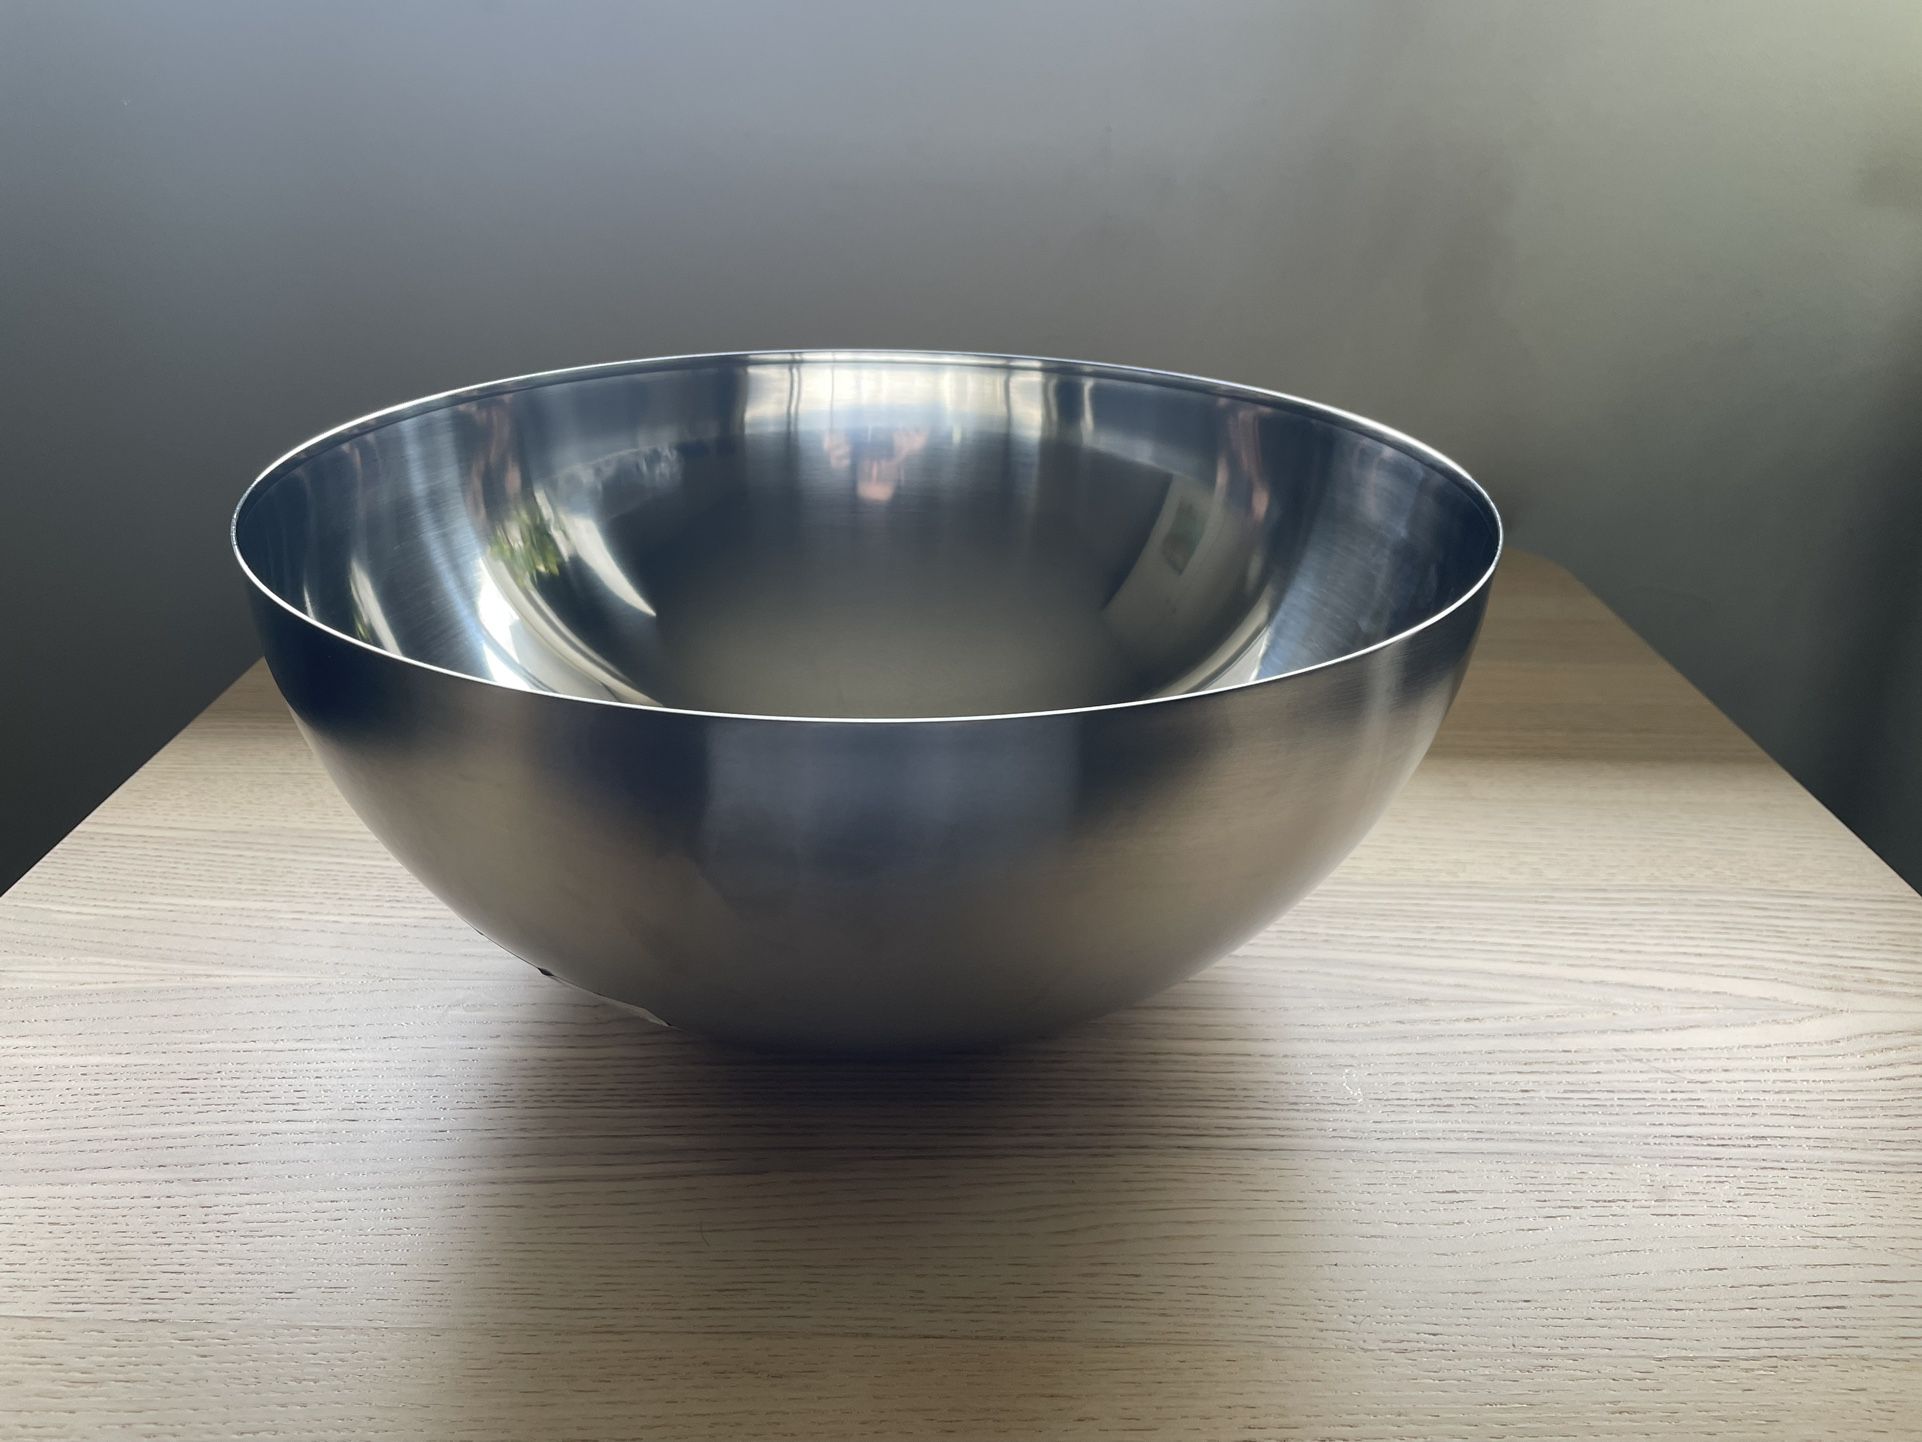 BLANDA BLANK Serving bowl, stainless steel, Height: 6 Diameter: 14 - IKEA